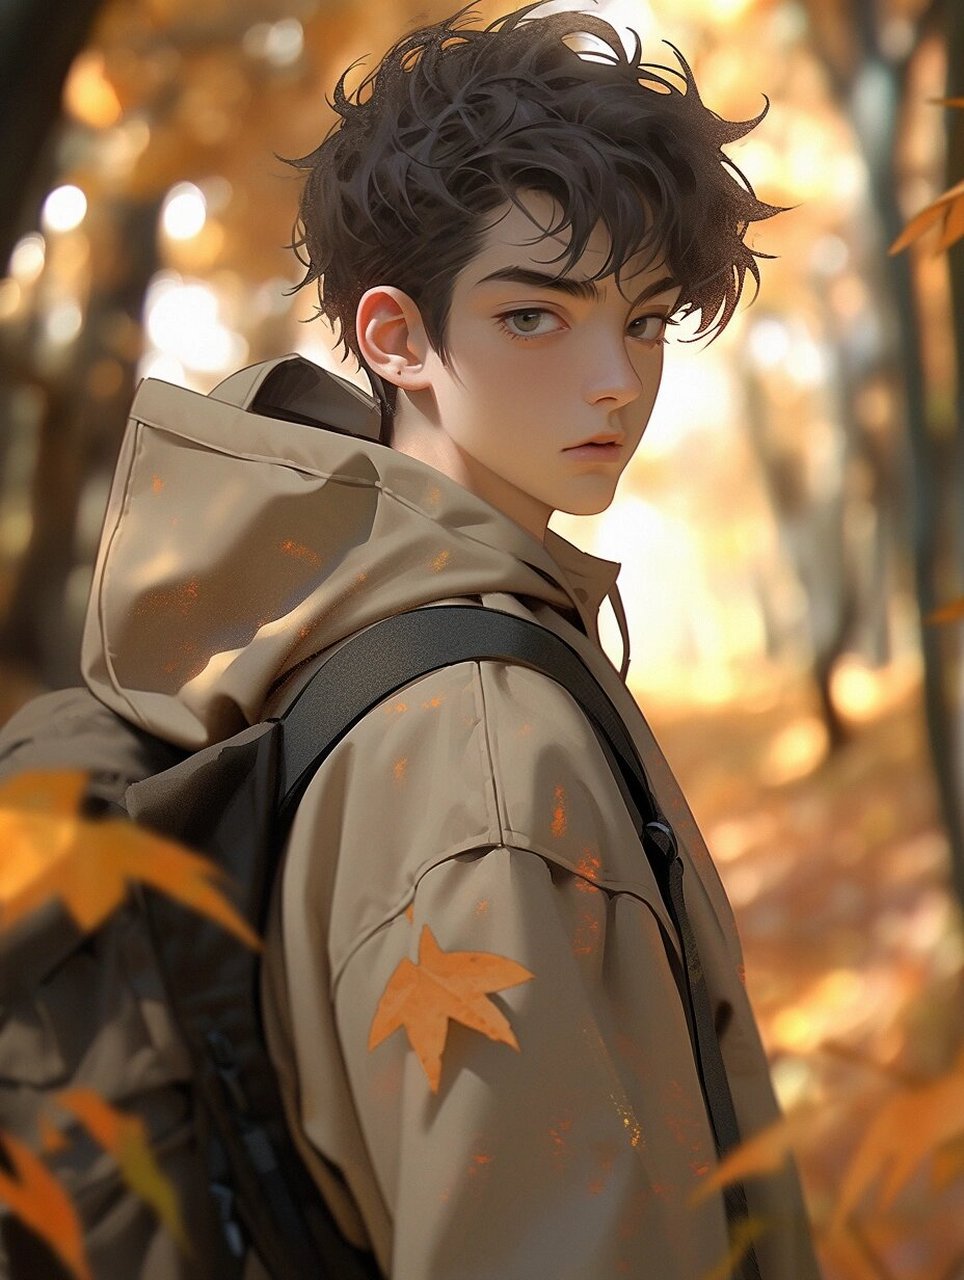 【男生头像】秋天,落叶,氛围感男生 秋风起, 落叶金黄, 走在路上